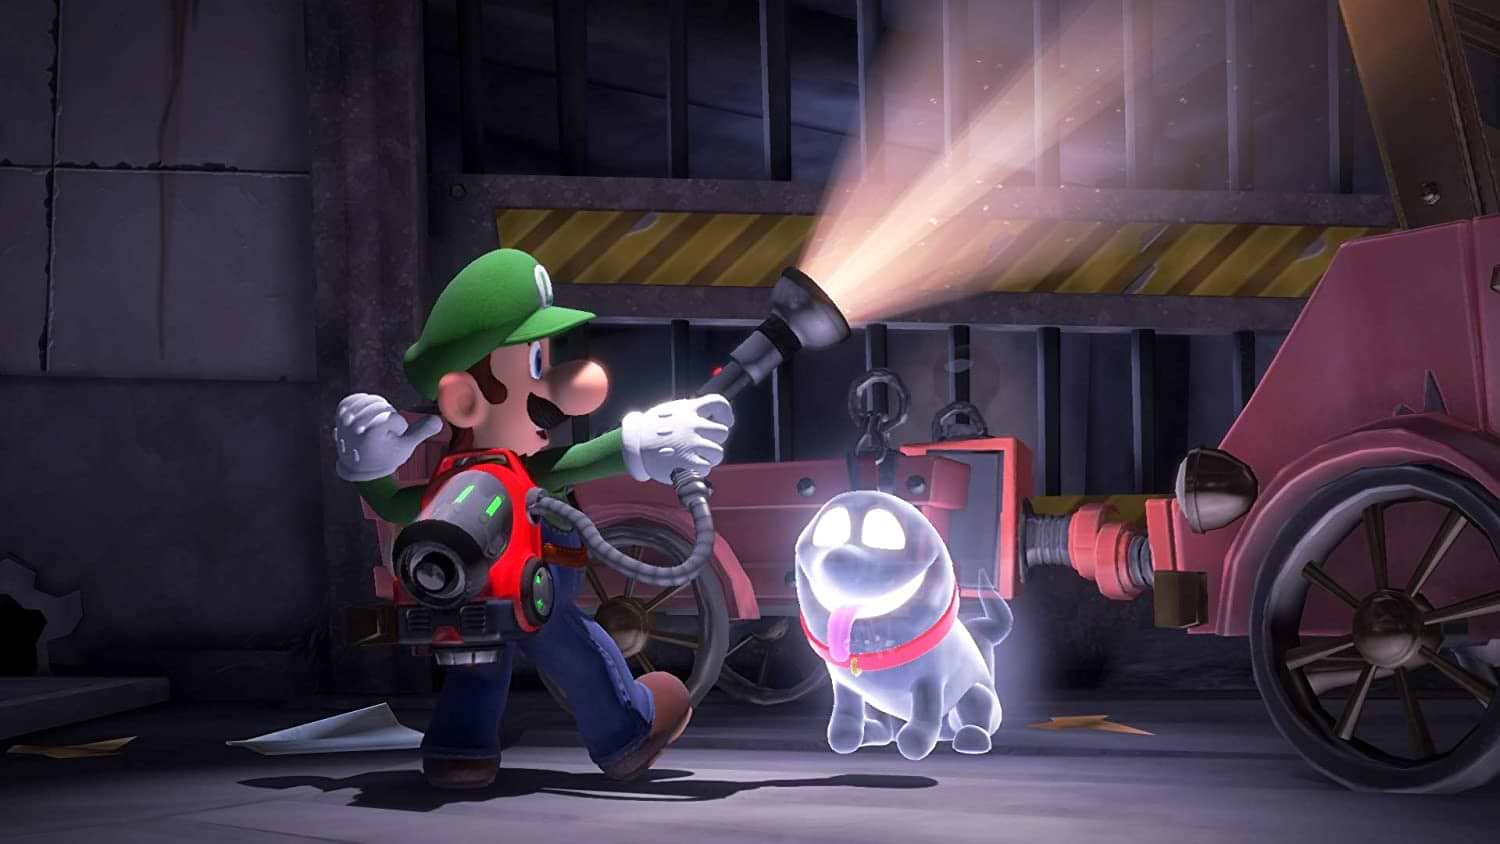 משחק Luigi's Mansion 3 לקונסולת Nintendo Switch